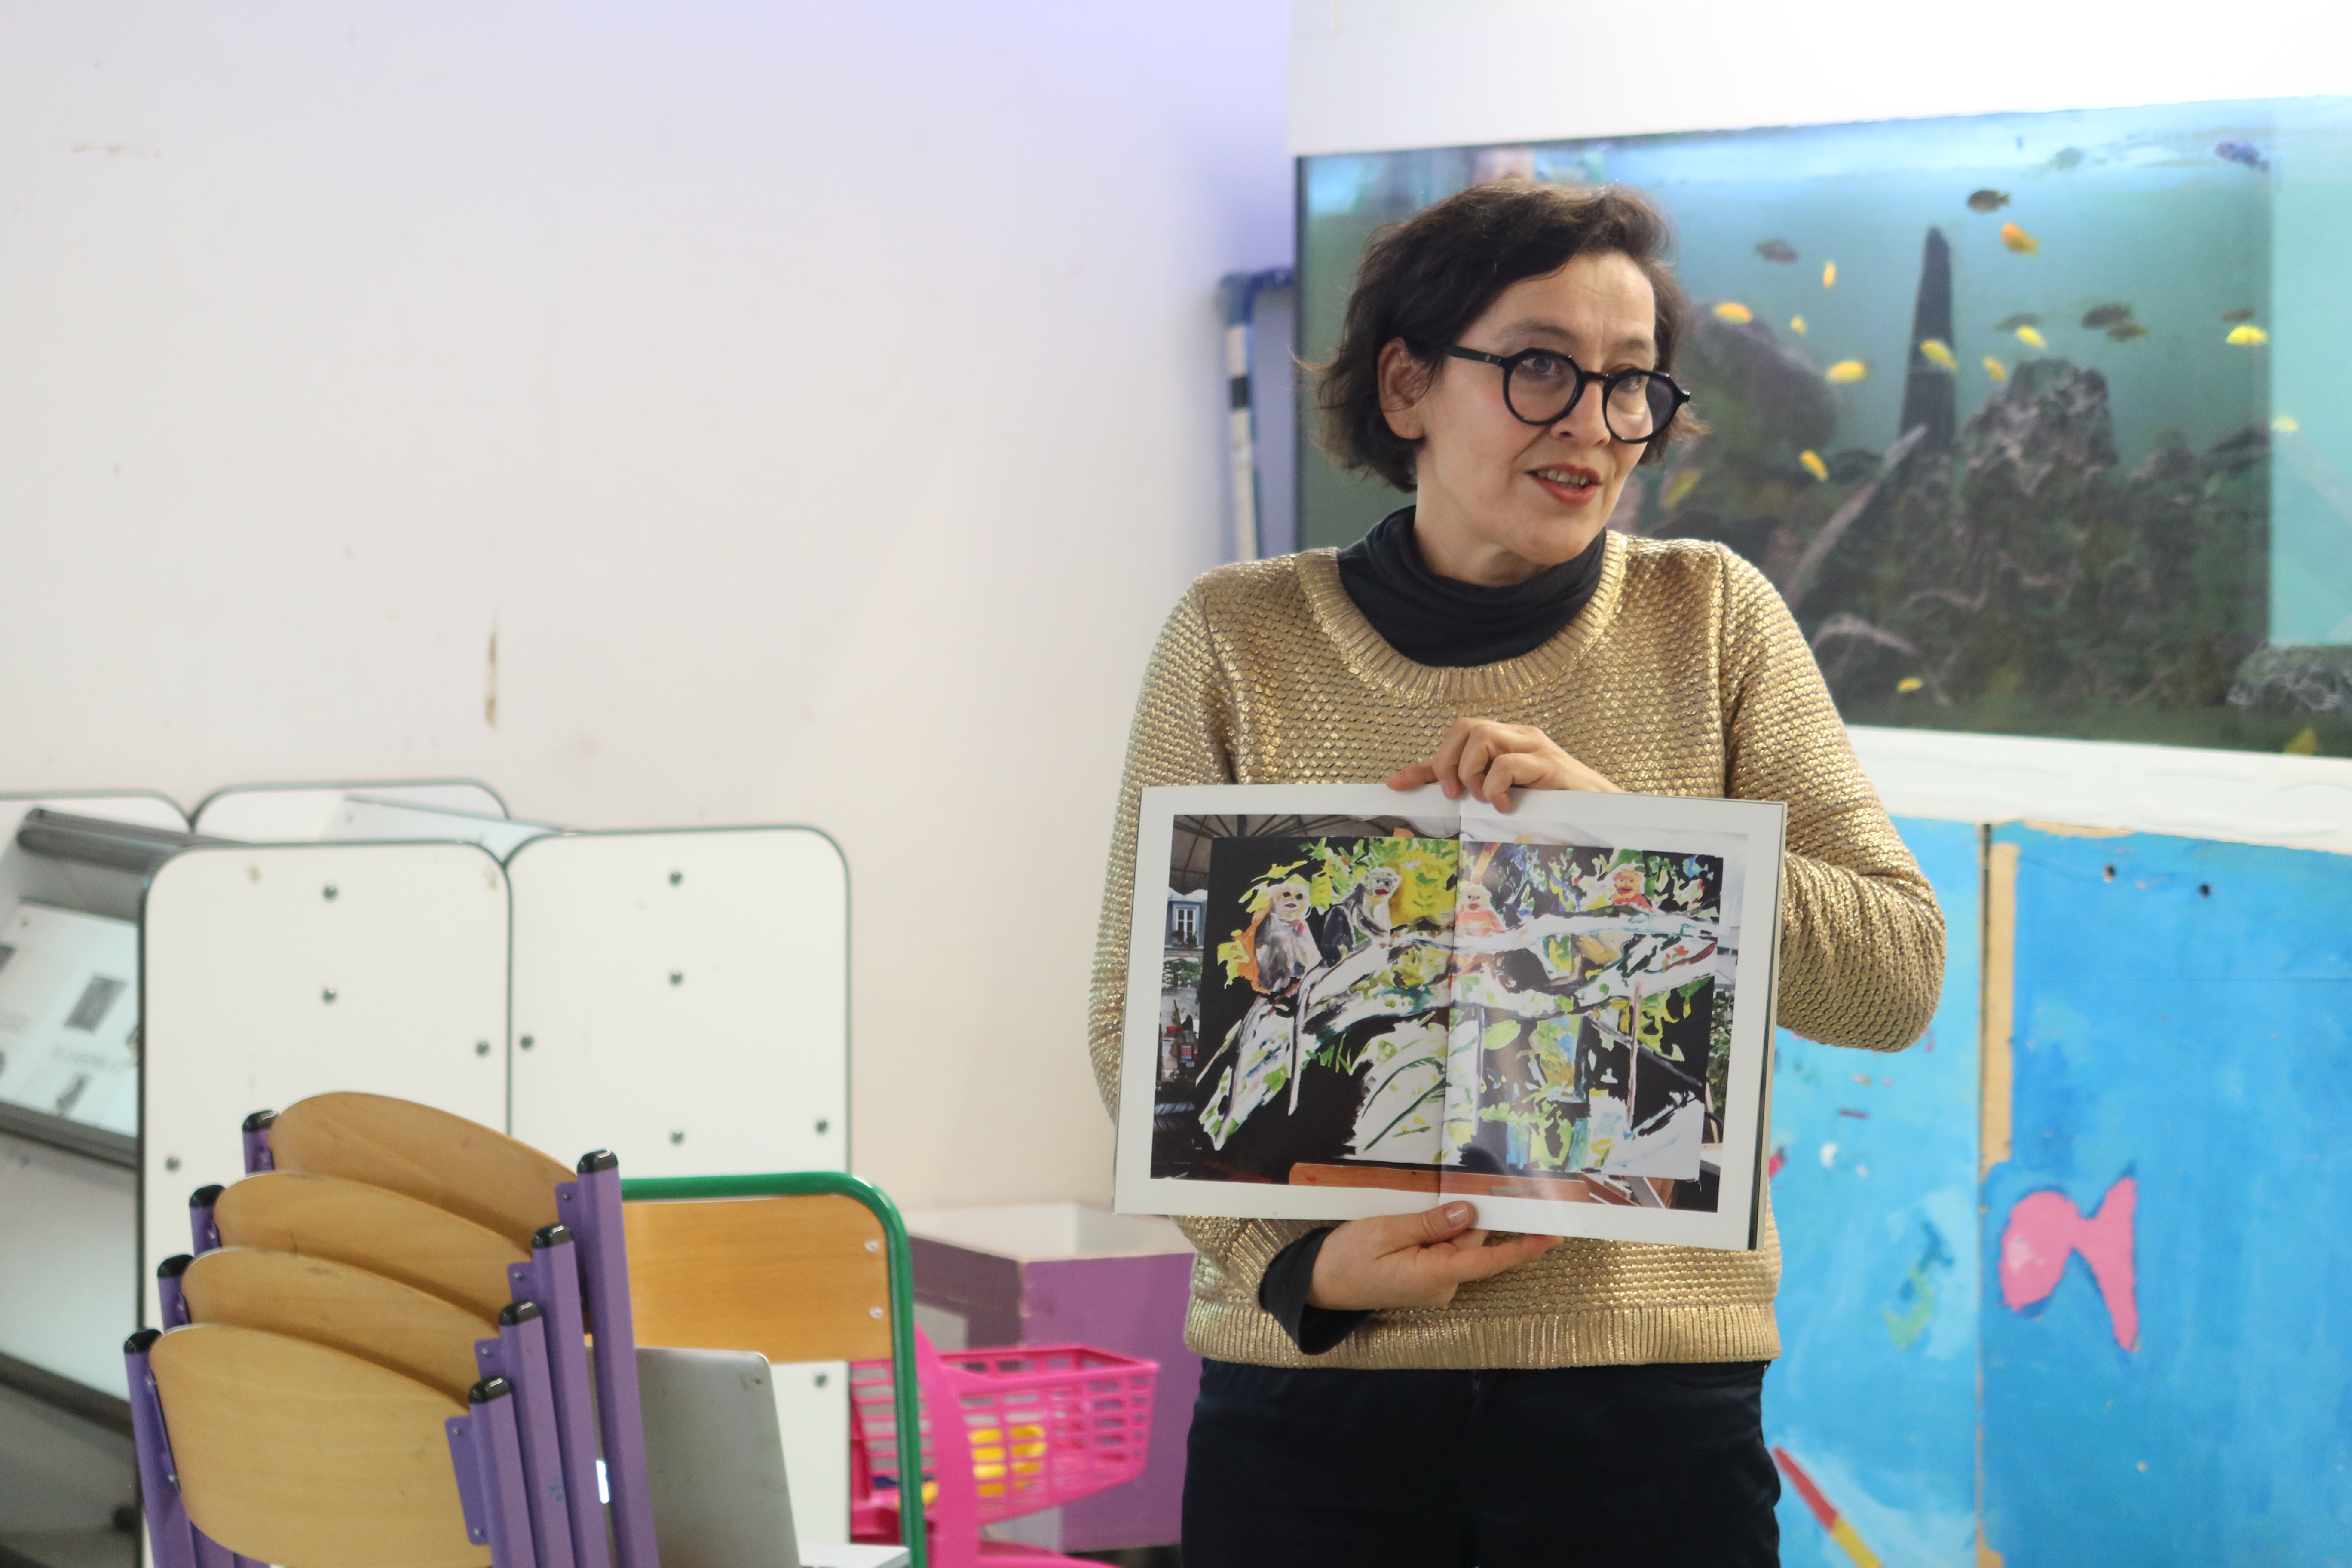 L'artiste, une femme brune avec des lunettes, présente un livre aux élèves. Le livre en grand ouvert, image vers ses interlocuteurs.